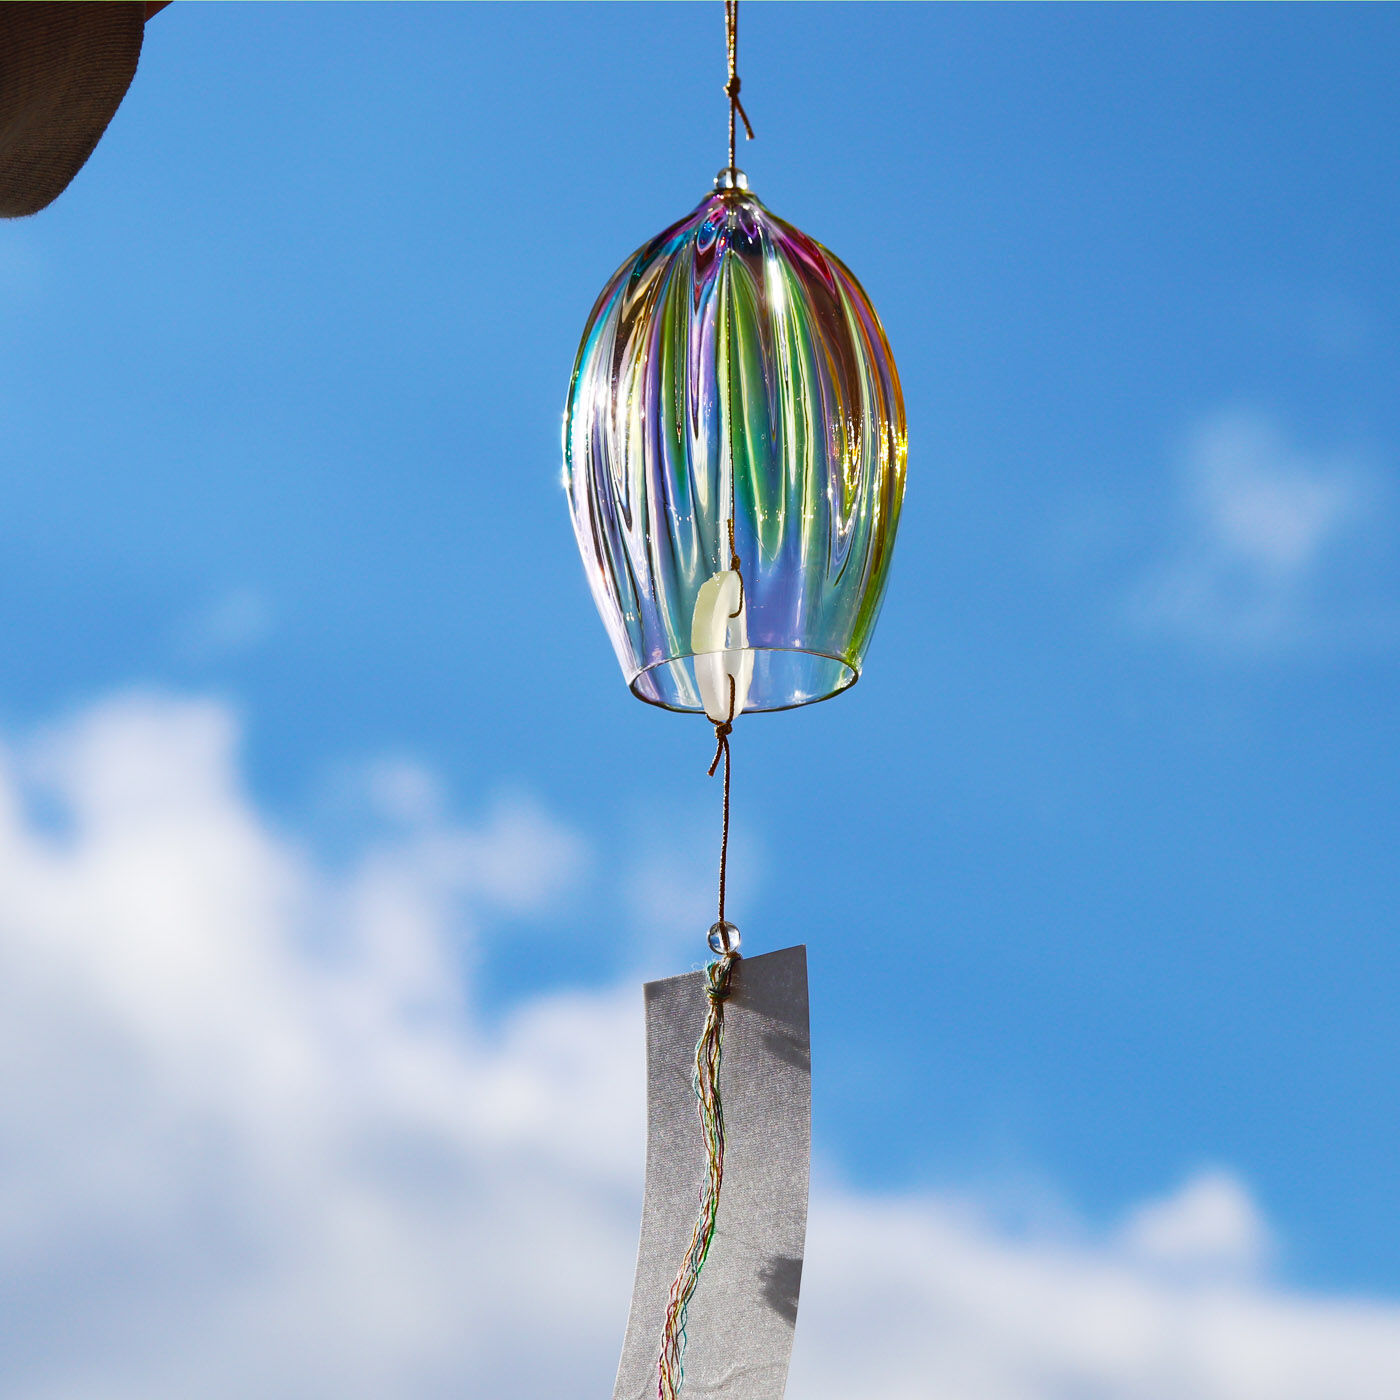 ＆Stories|小田原のガラス職人が作った　オーロラが溶け込んだ宙吹き風鈴|プリズムを放つ、オーロラ色の風鈴。透き通るような「リーン」と響く音色は夏の涼になることでしょう。